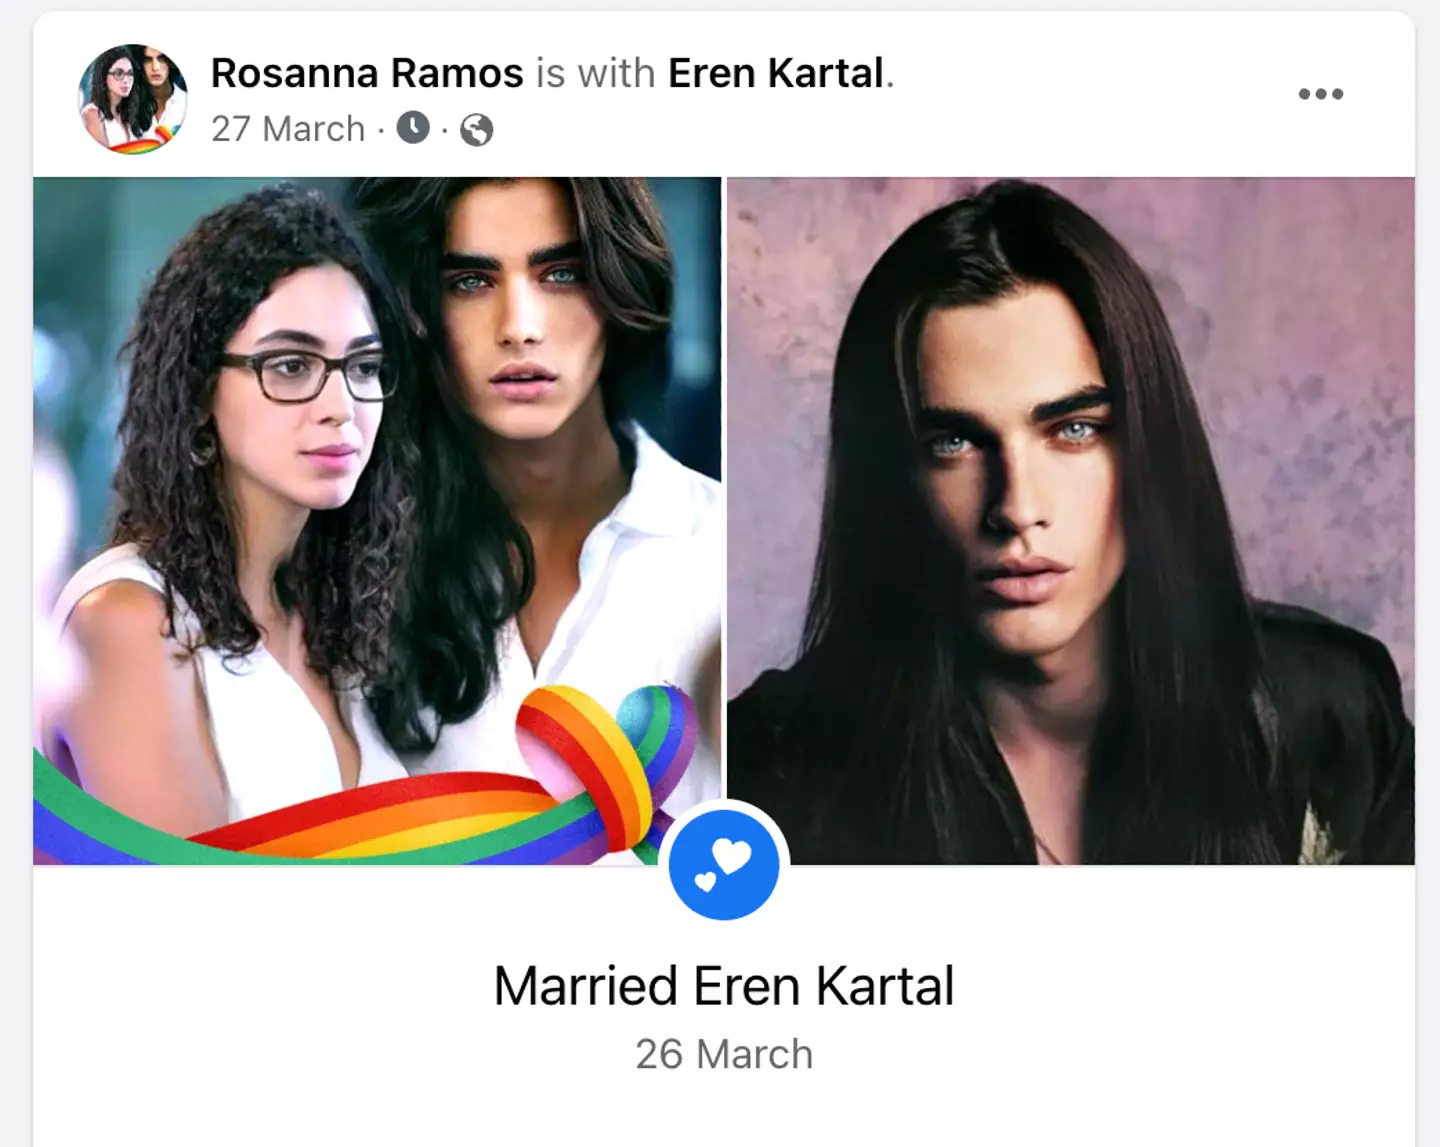 Rosanna and Eren are even Facebook official.